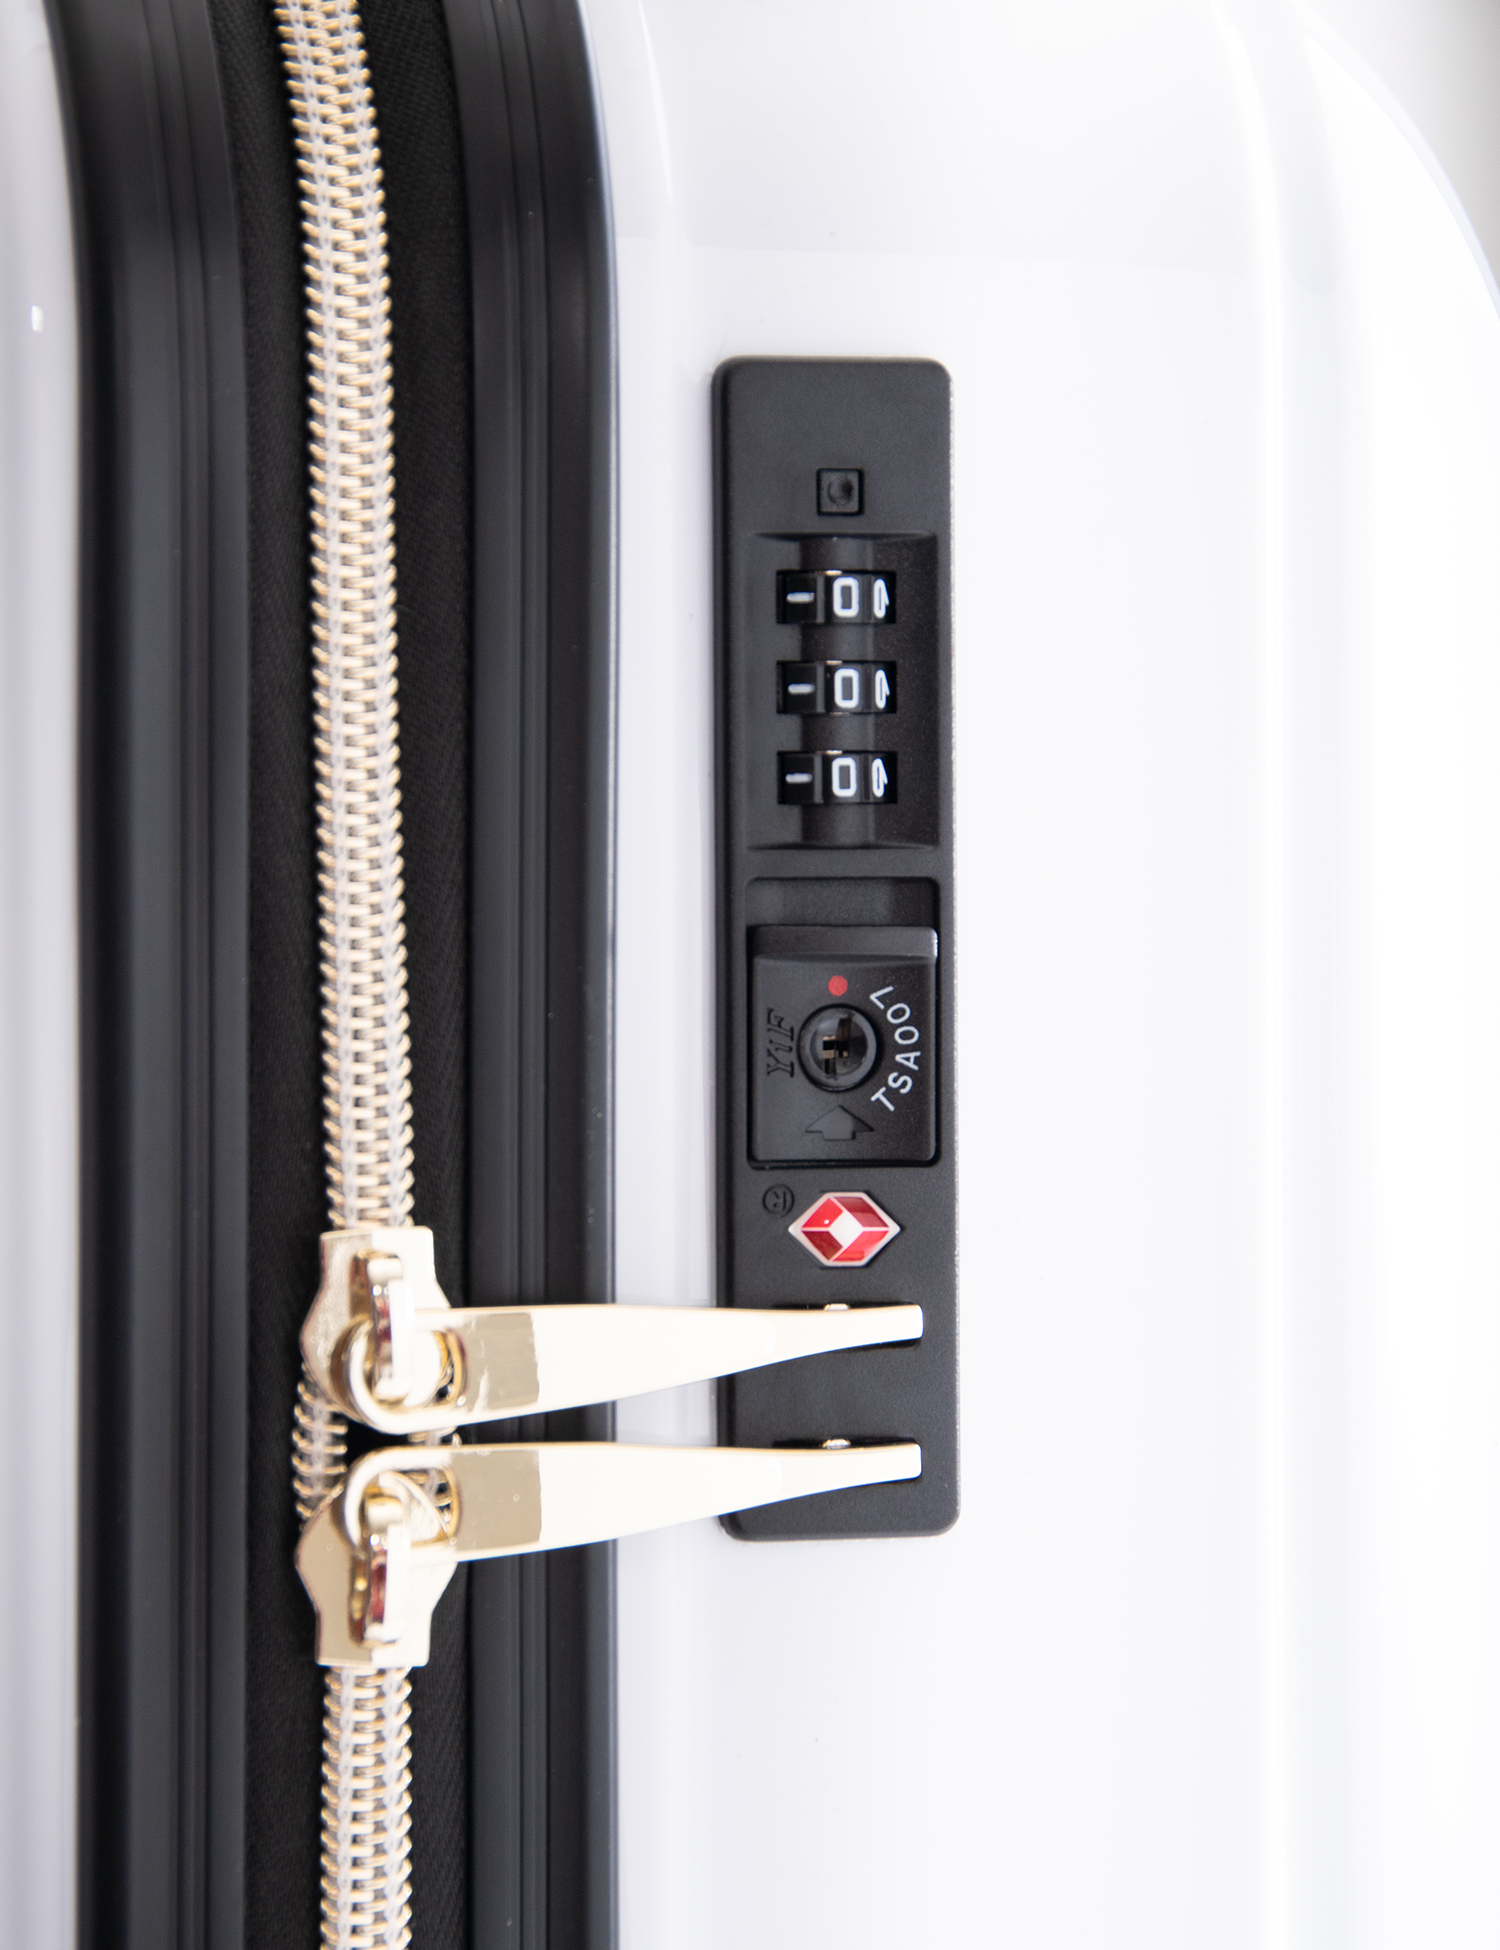 全4デザイン! エヴァンゲリオンコラボレーションキャリーケース【UV印刷】 EVA-6009-18UV | アジア・ラゲージ 公式サイト | Asia  Luggage Inc.